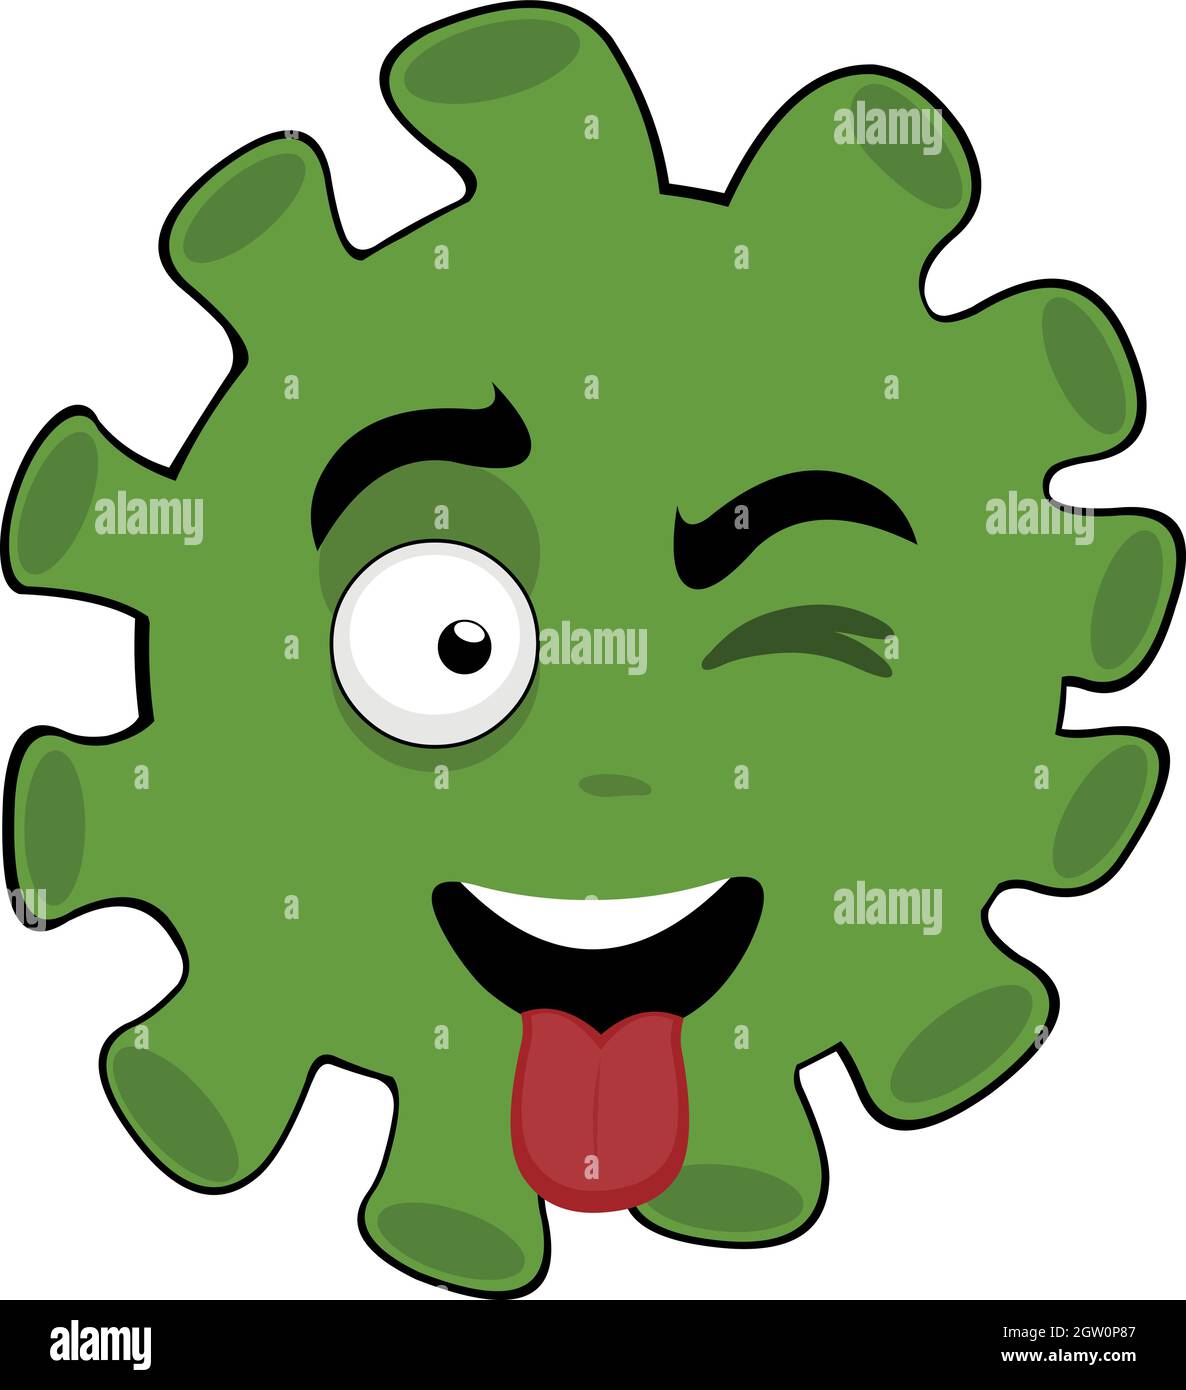 Vecteur émoticône illustration de virus, de microbe ou de bactéries caricature, et avec la langue dehors Illustration de Vecteur